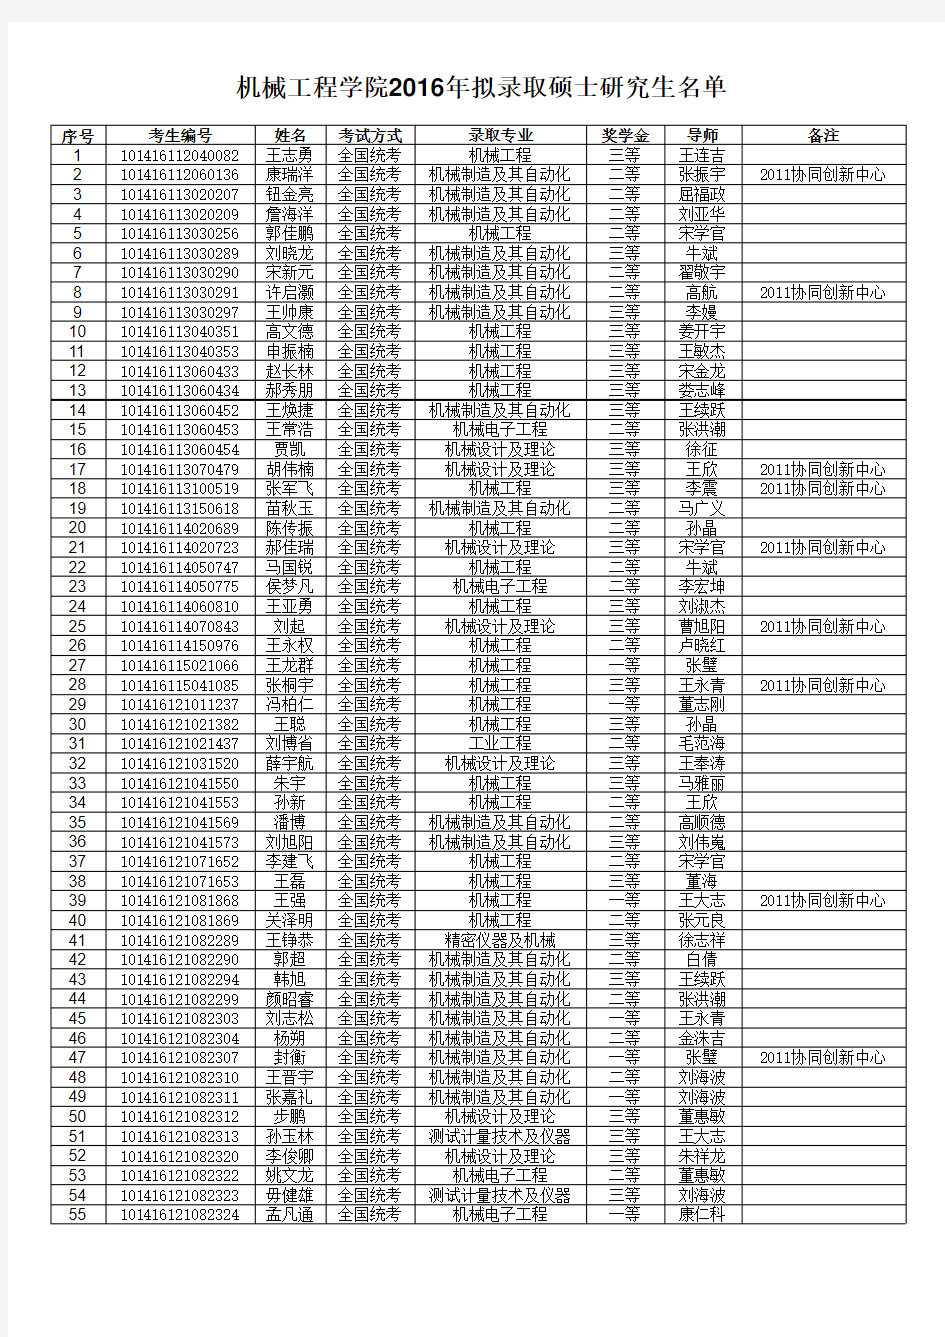 2016年硕士研究生拟录取名单(公示).xls; filename=utf-8''2016年硕士研究生拟录取名单(公示)